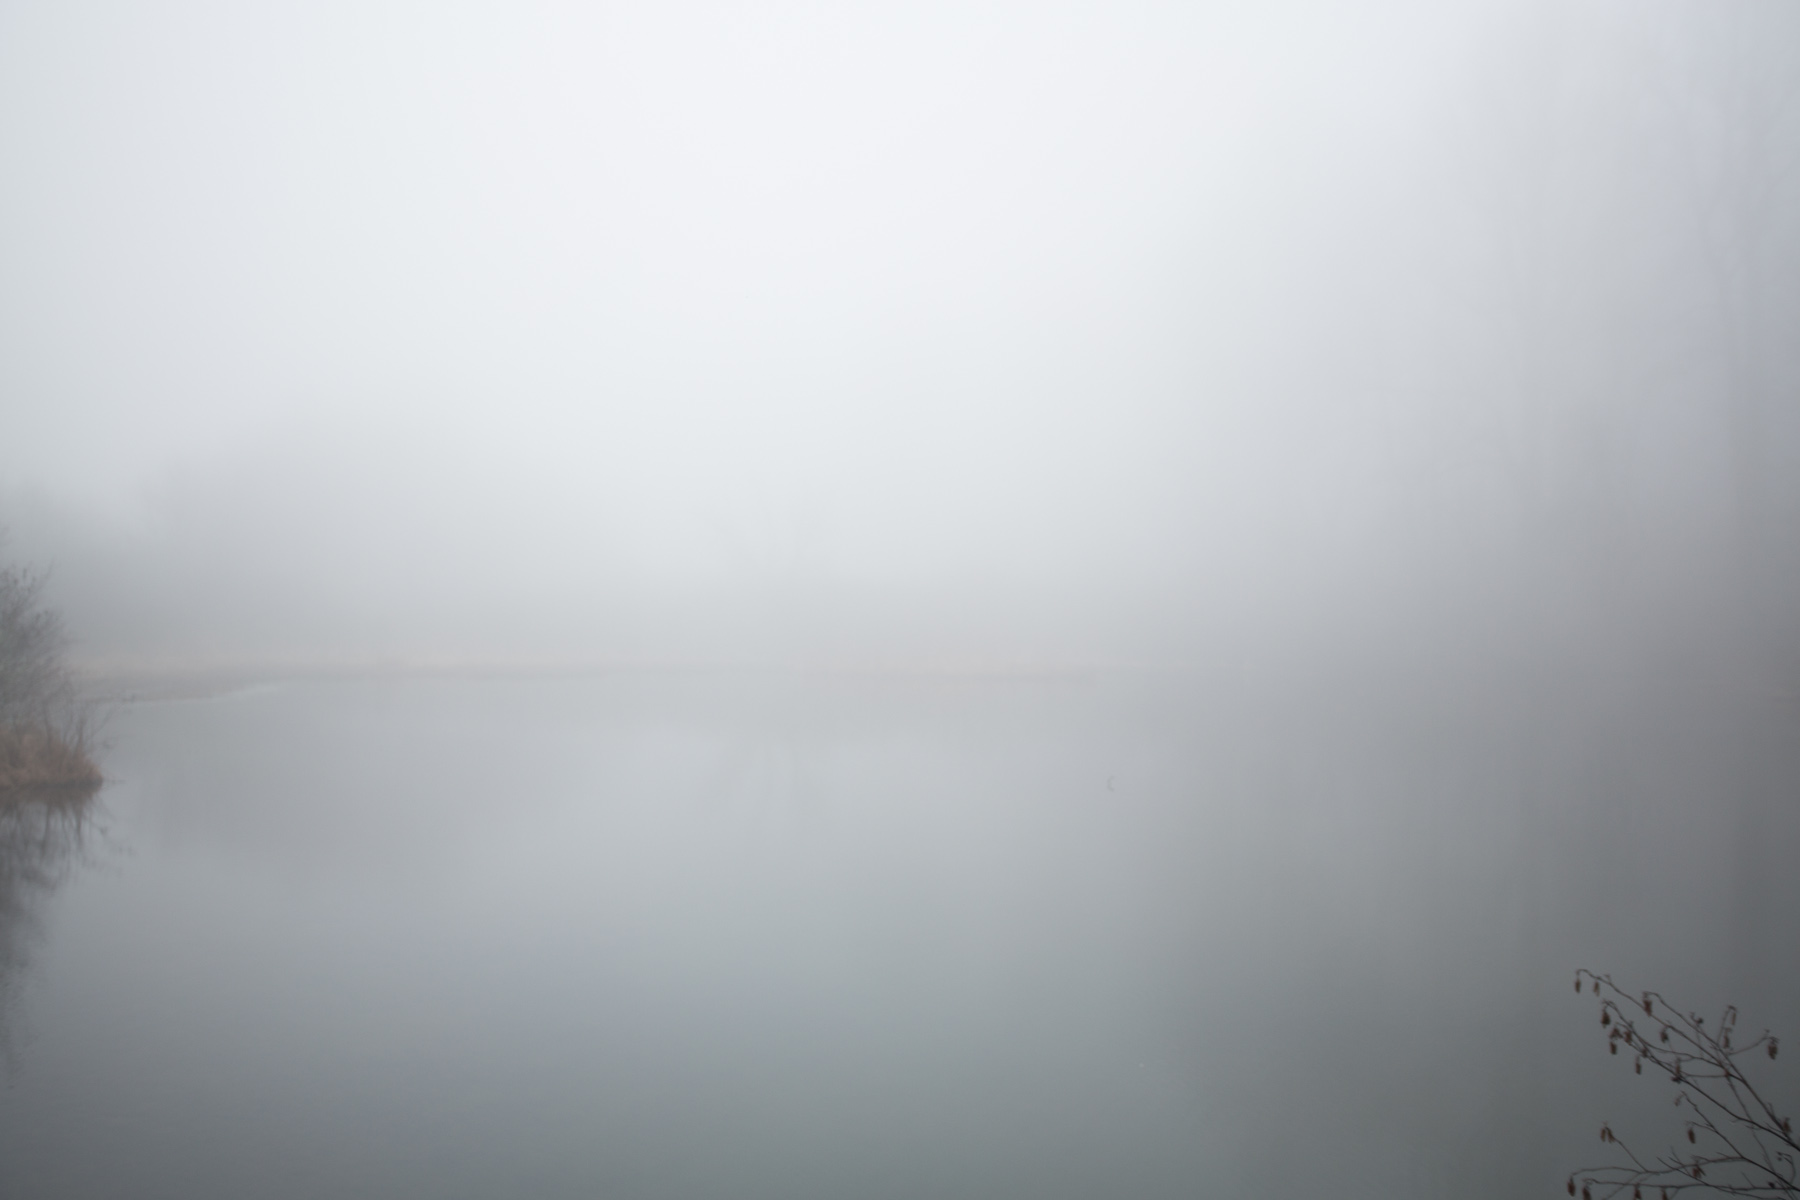 RA_tate in fog-201602206675.jpg